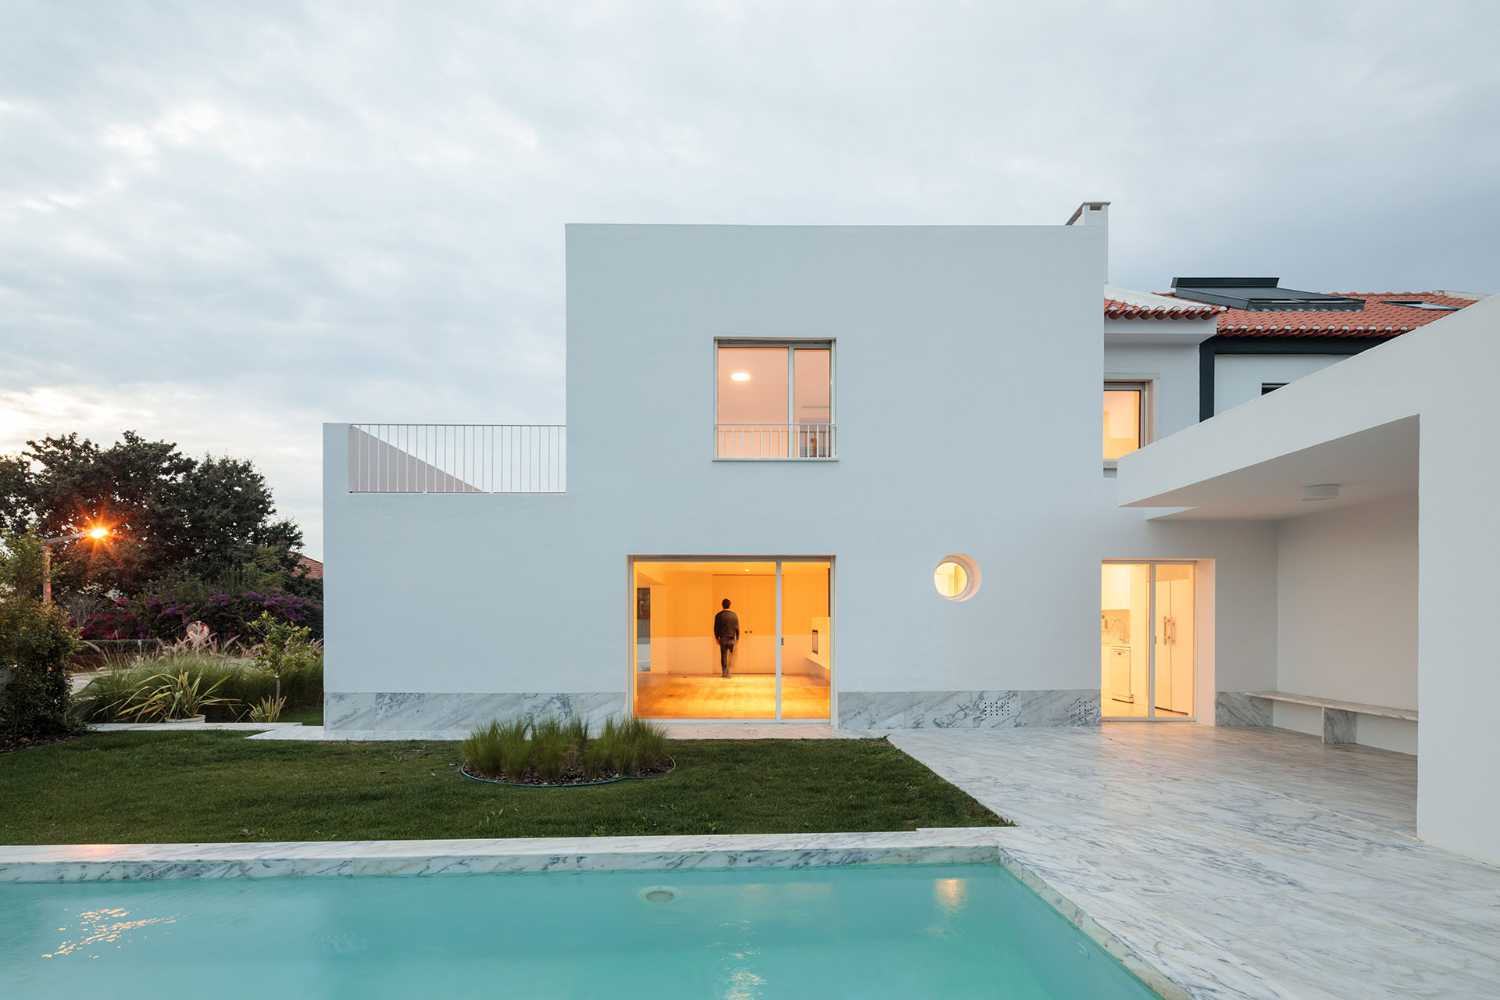 Rénovation d'une maison à Lisbonne. De l'esthétique chaotique à une architecture cohérente et minimaliste